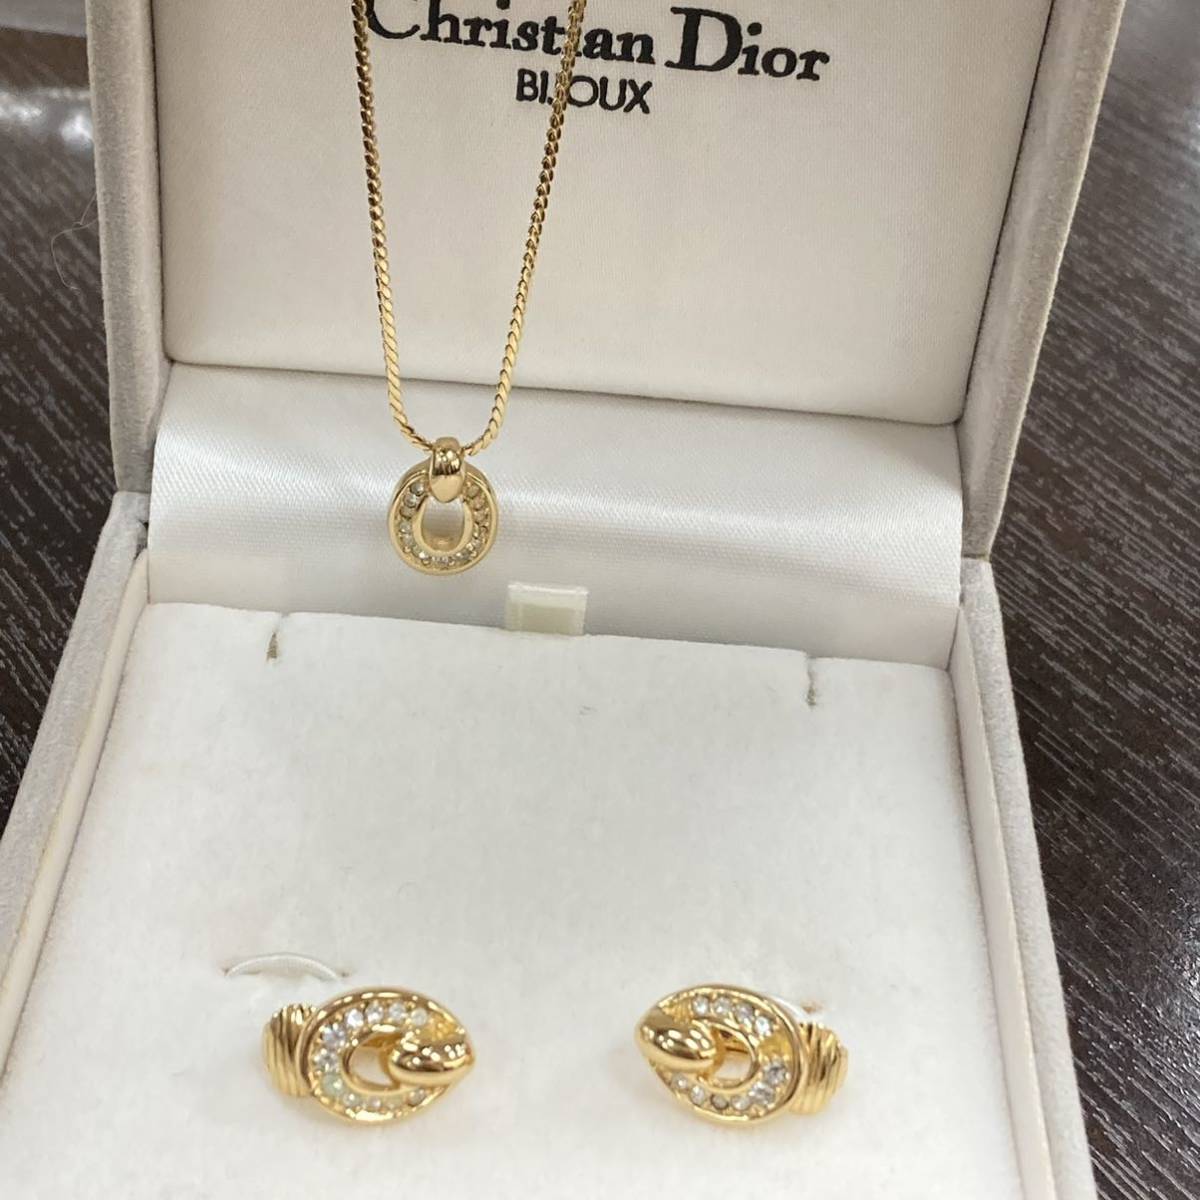 Christian Dior クリスチャンディオール アクセサリー ネックレス イヤリング ラインストーン 箱 レディース ブランド ファッション 人気